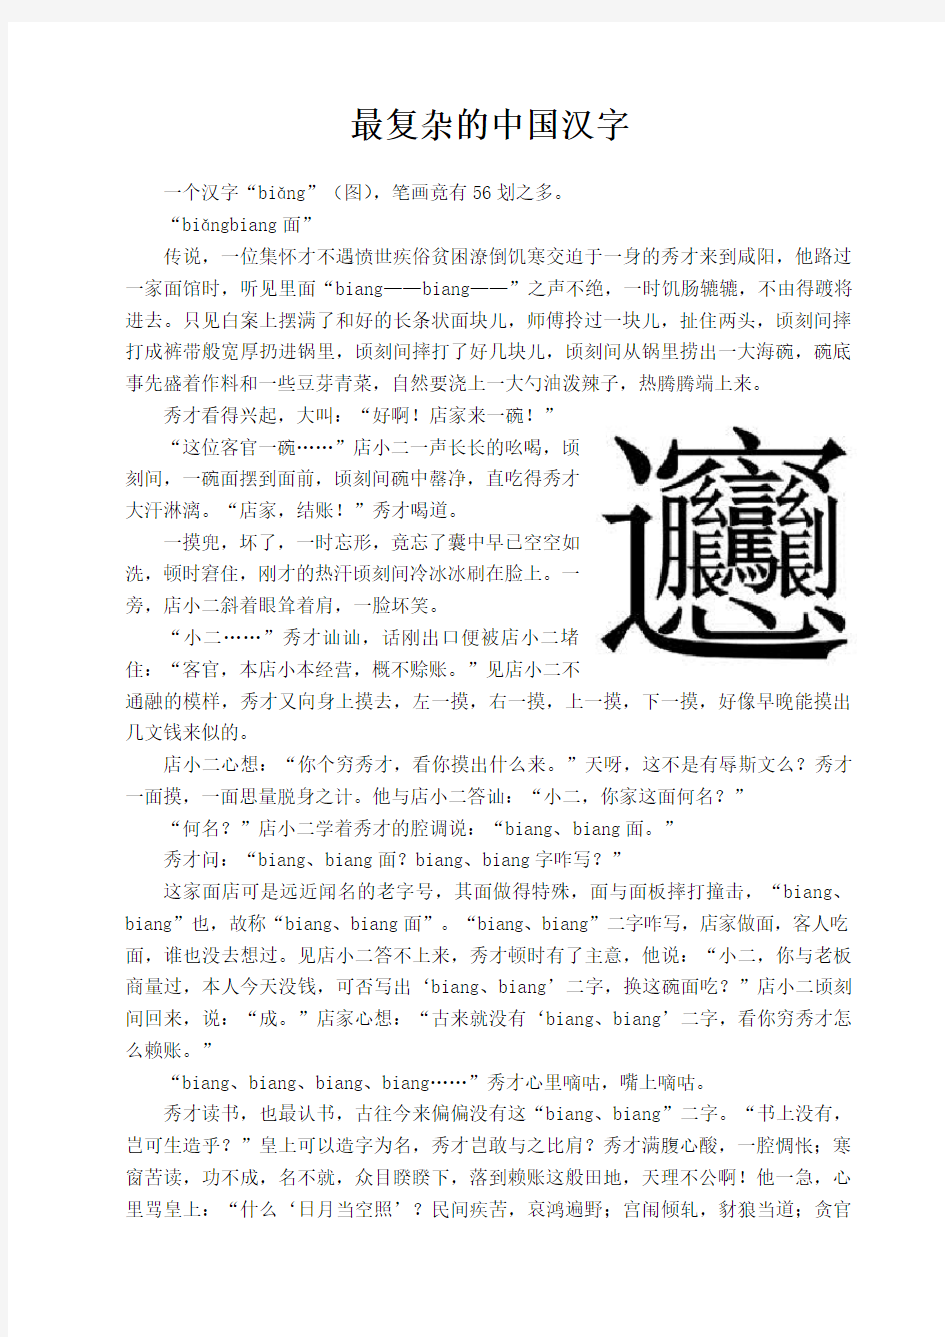 最复杂的中国汉字